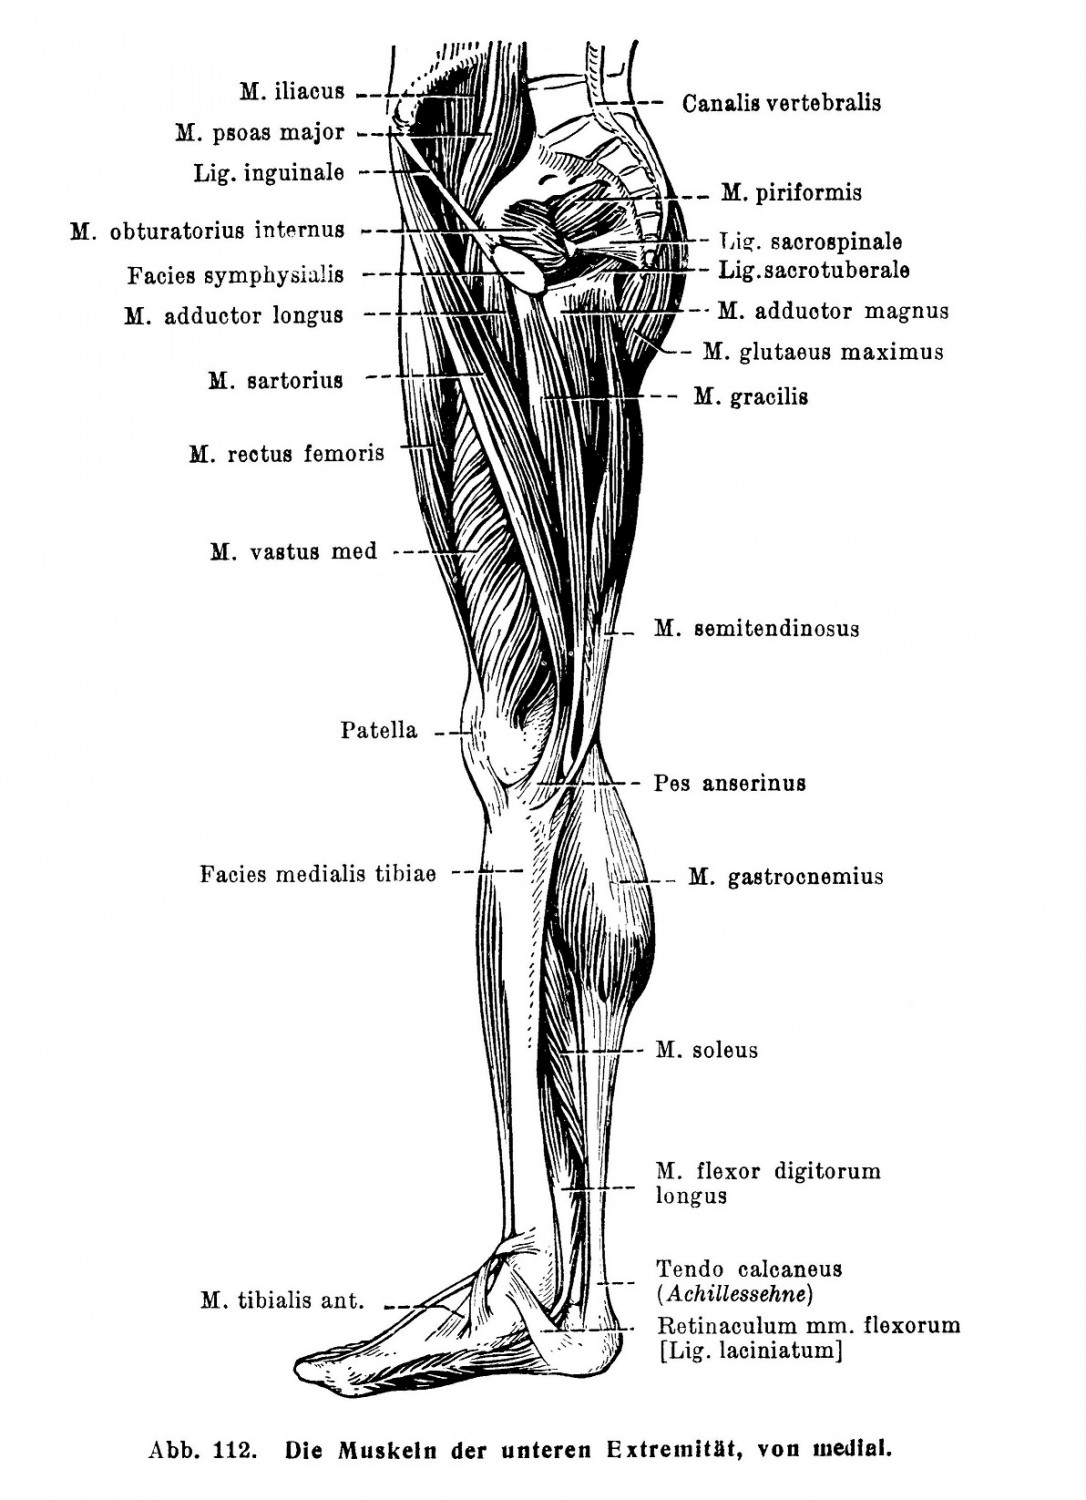 Die Muskeln der unteren Extremität, von medial